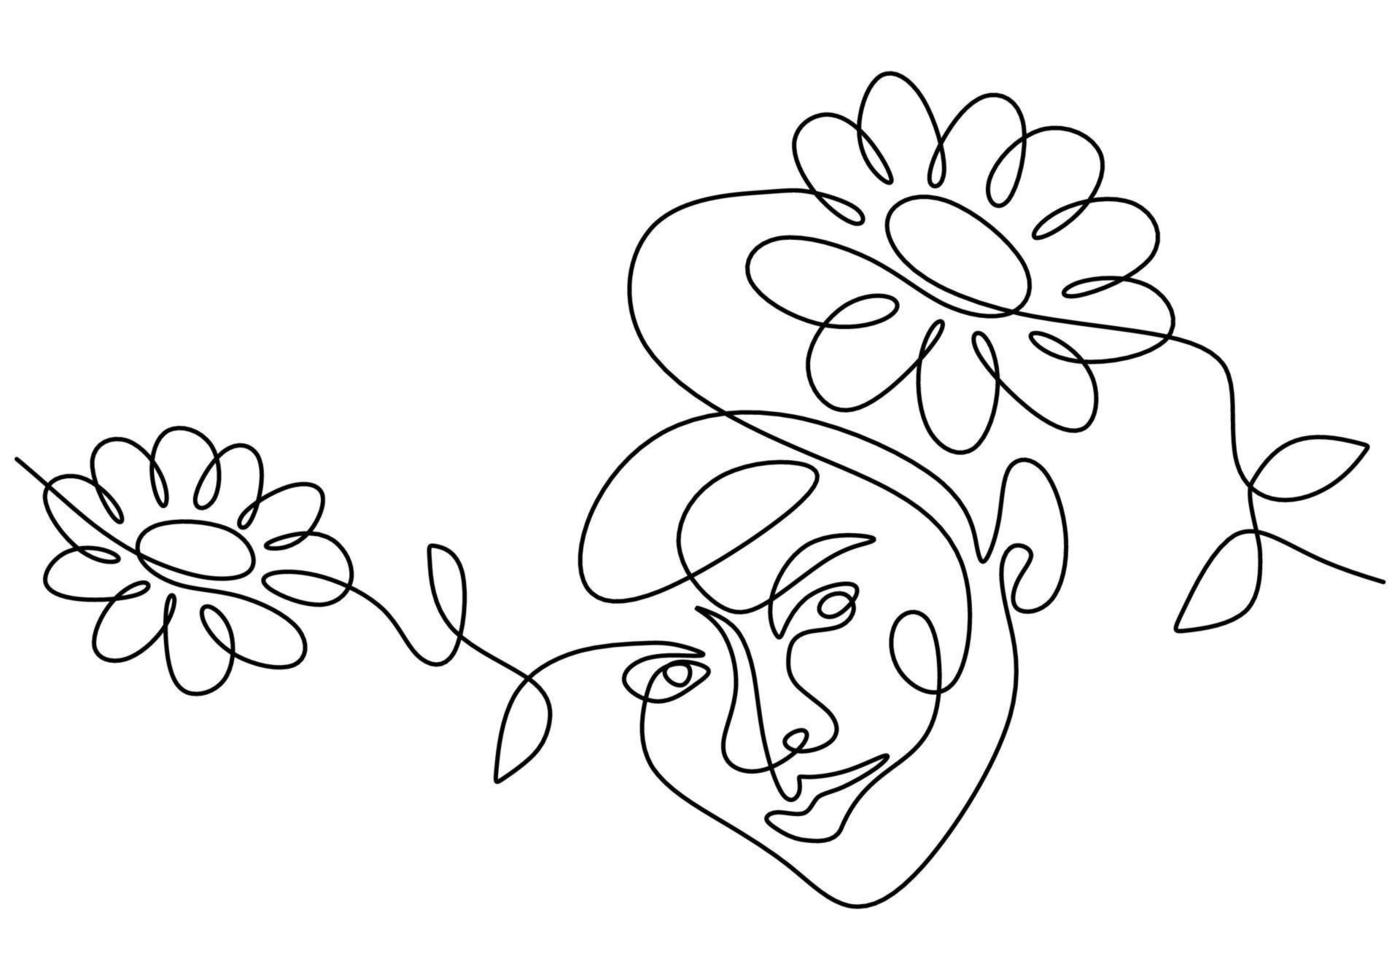 dibujo a mano una línea mujer cara surrealista y flor vector